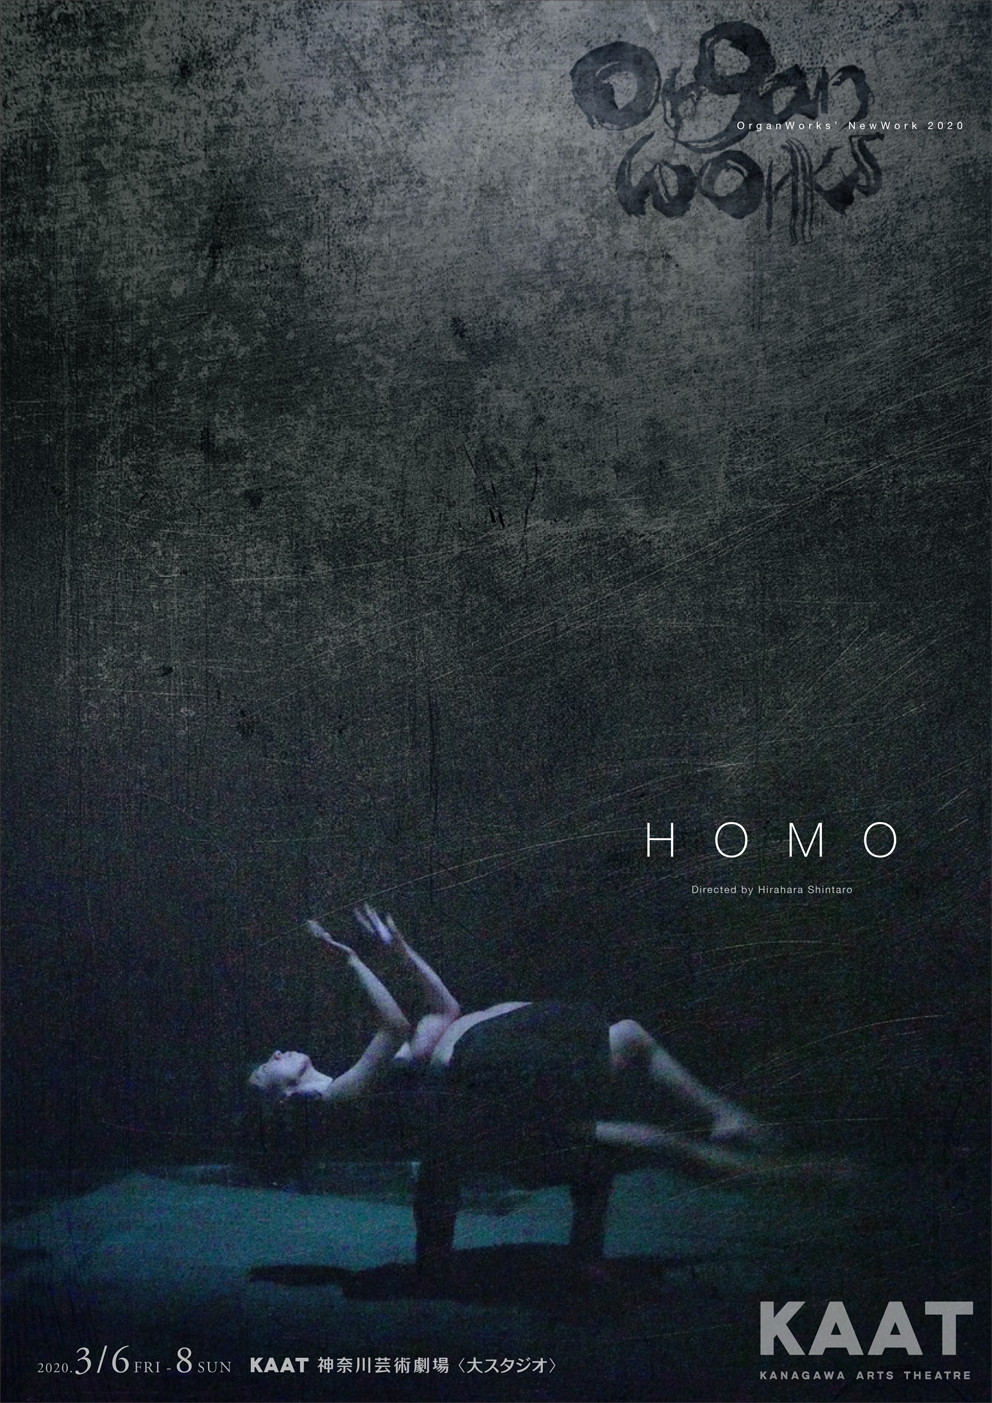 記事「薬師寺綾・柴一平出演、OrganWorksの最新作【HOMO】人類の成り立ちを探る壮大な旅に出よう。」の画像